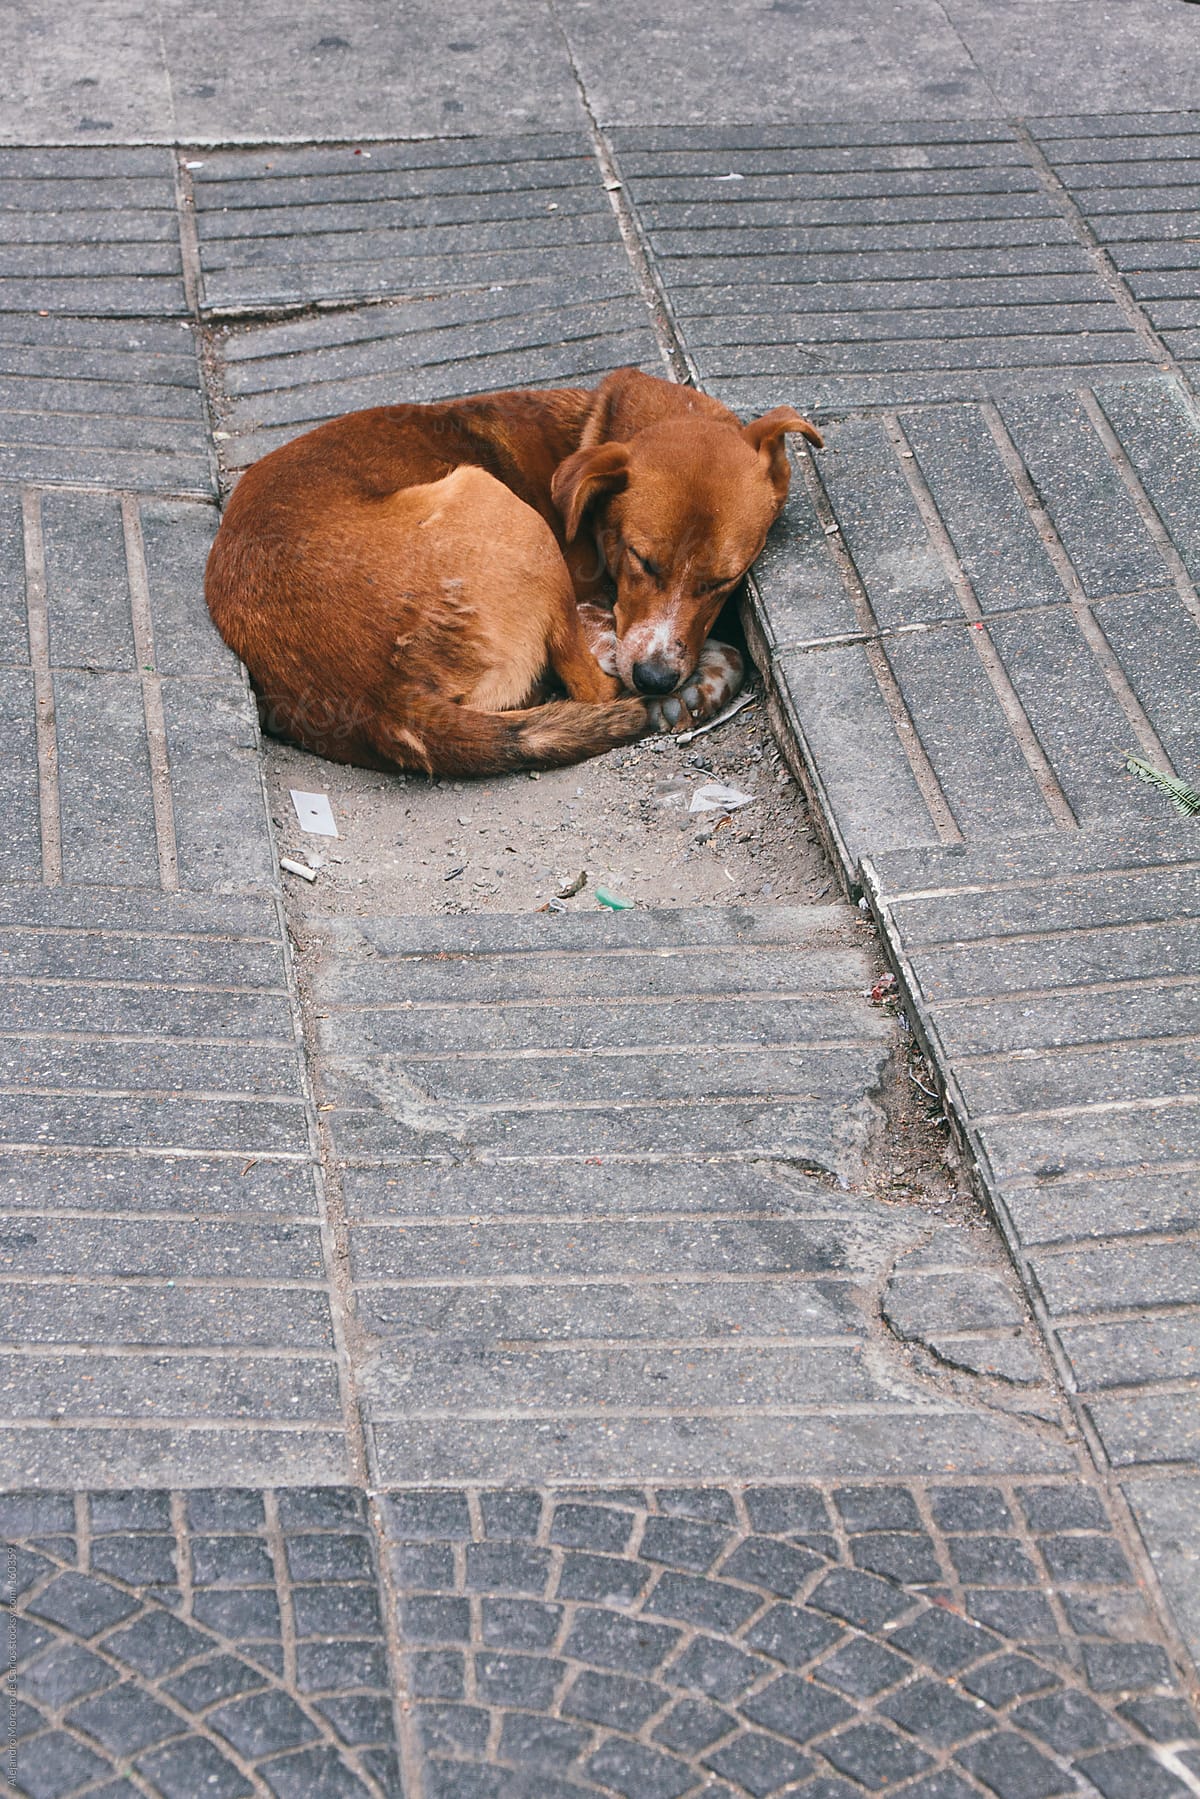 Stray dog abandoned sleeping on the street